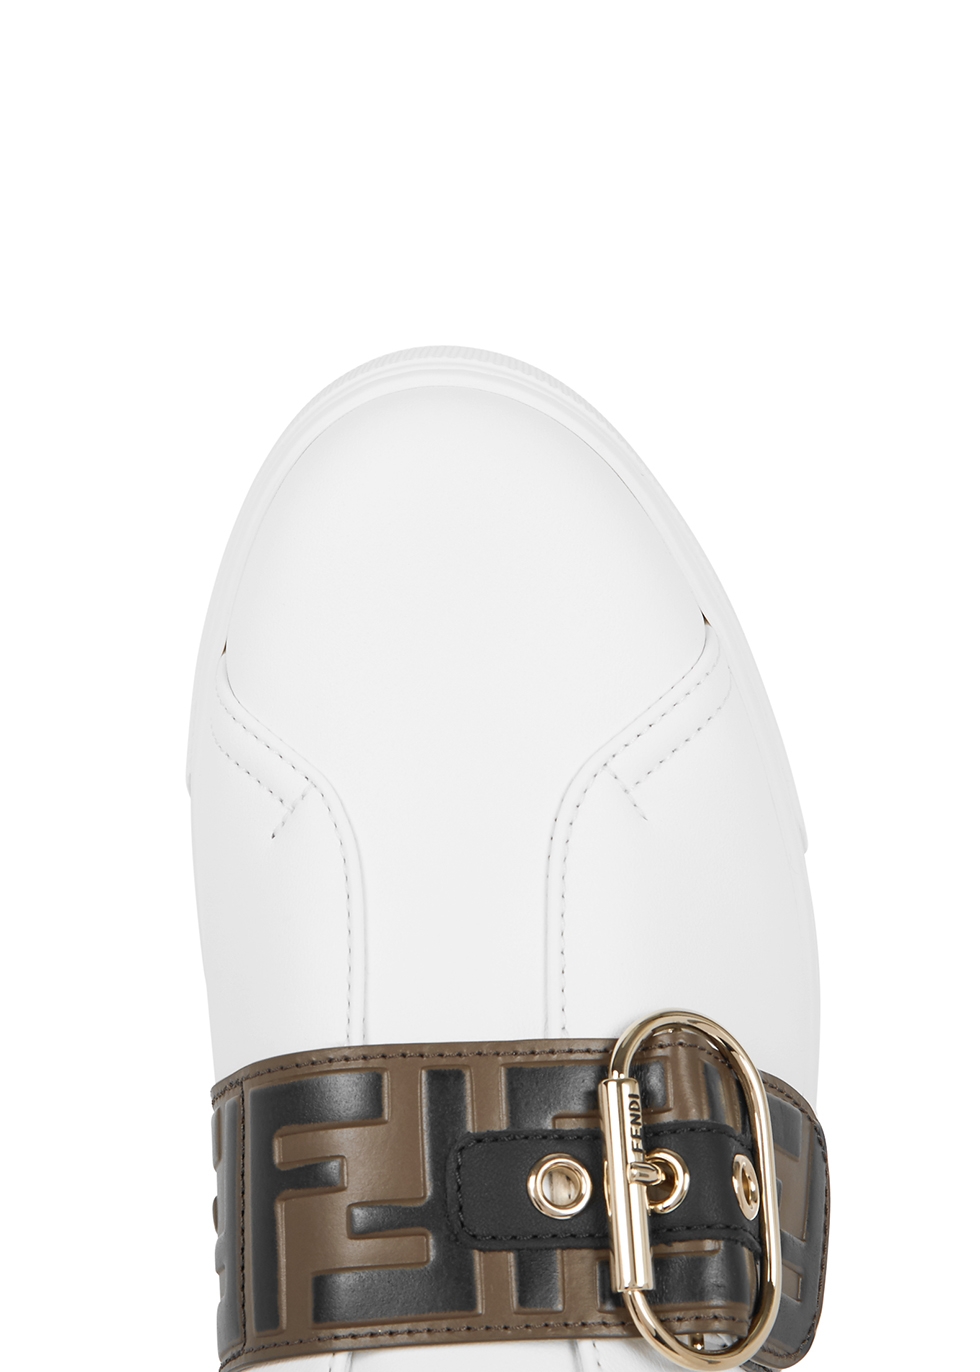 fendi white leather sneakers